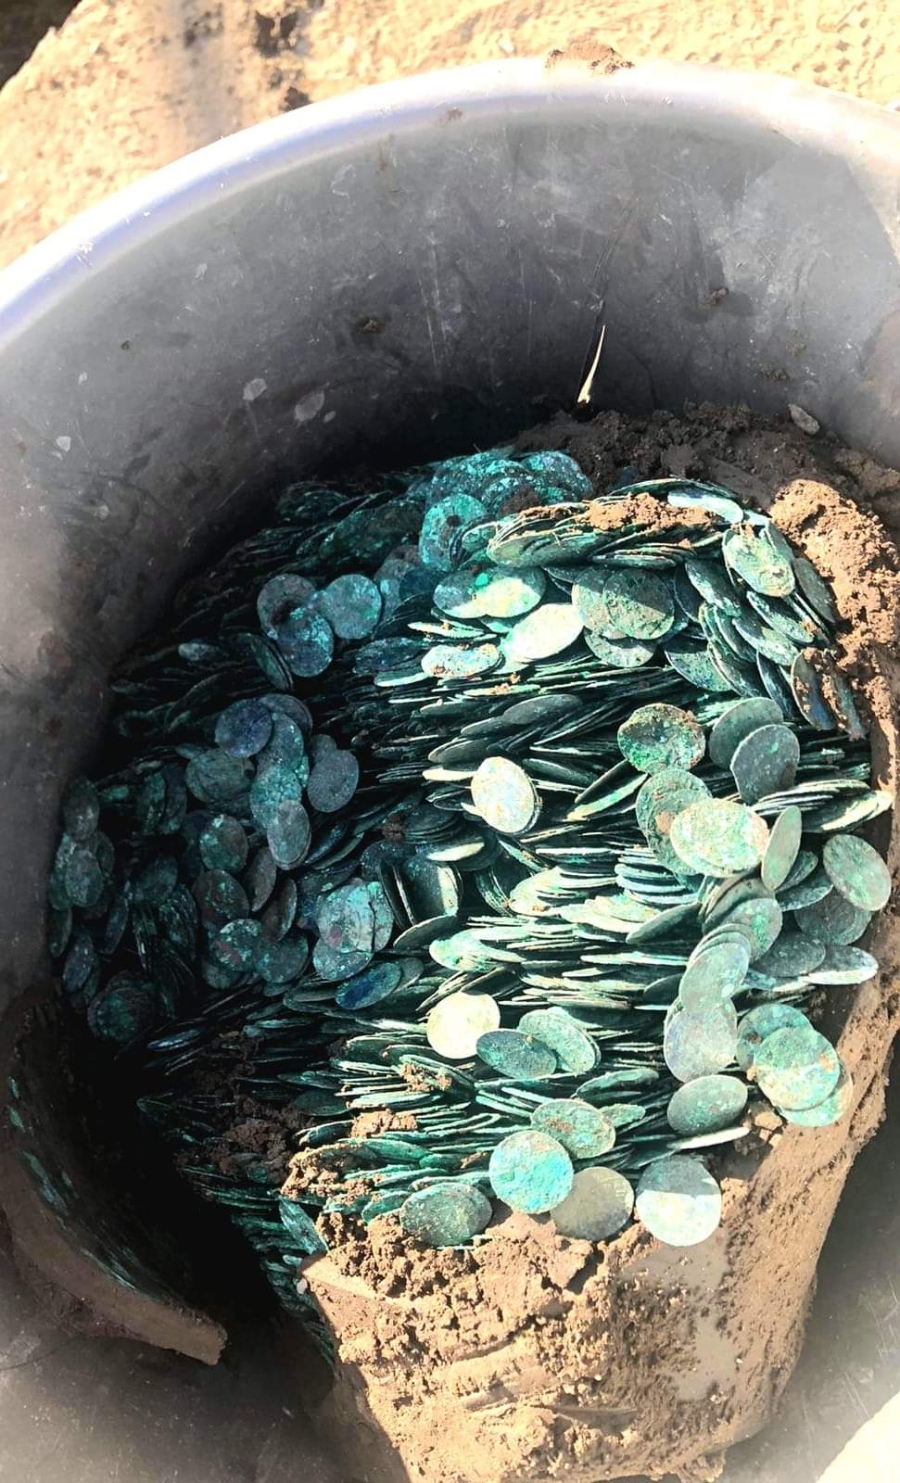 Bani falşi ascunşi într-un vas ceramic, găsiţi de muncitorii care săpau un şanţ în Tecuci (FOTO)